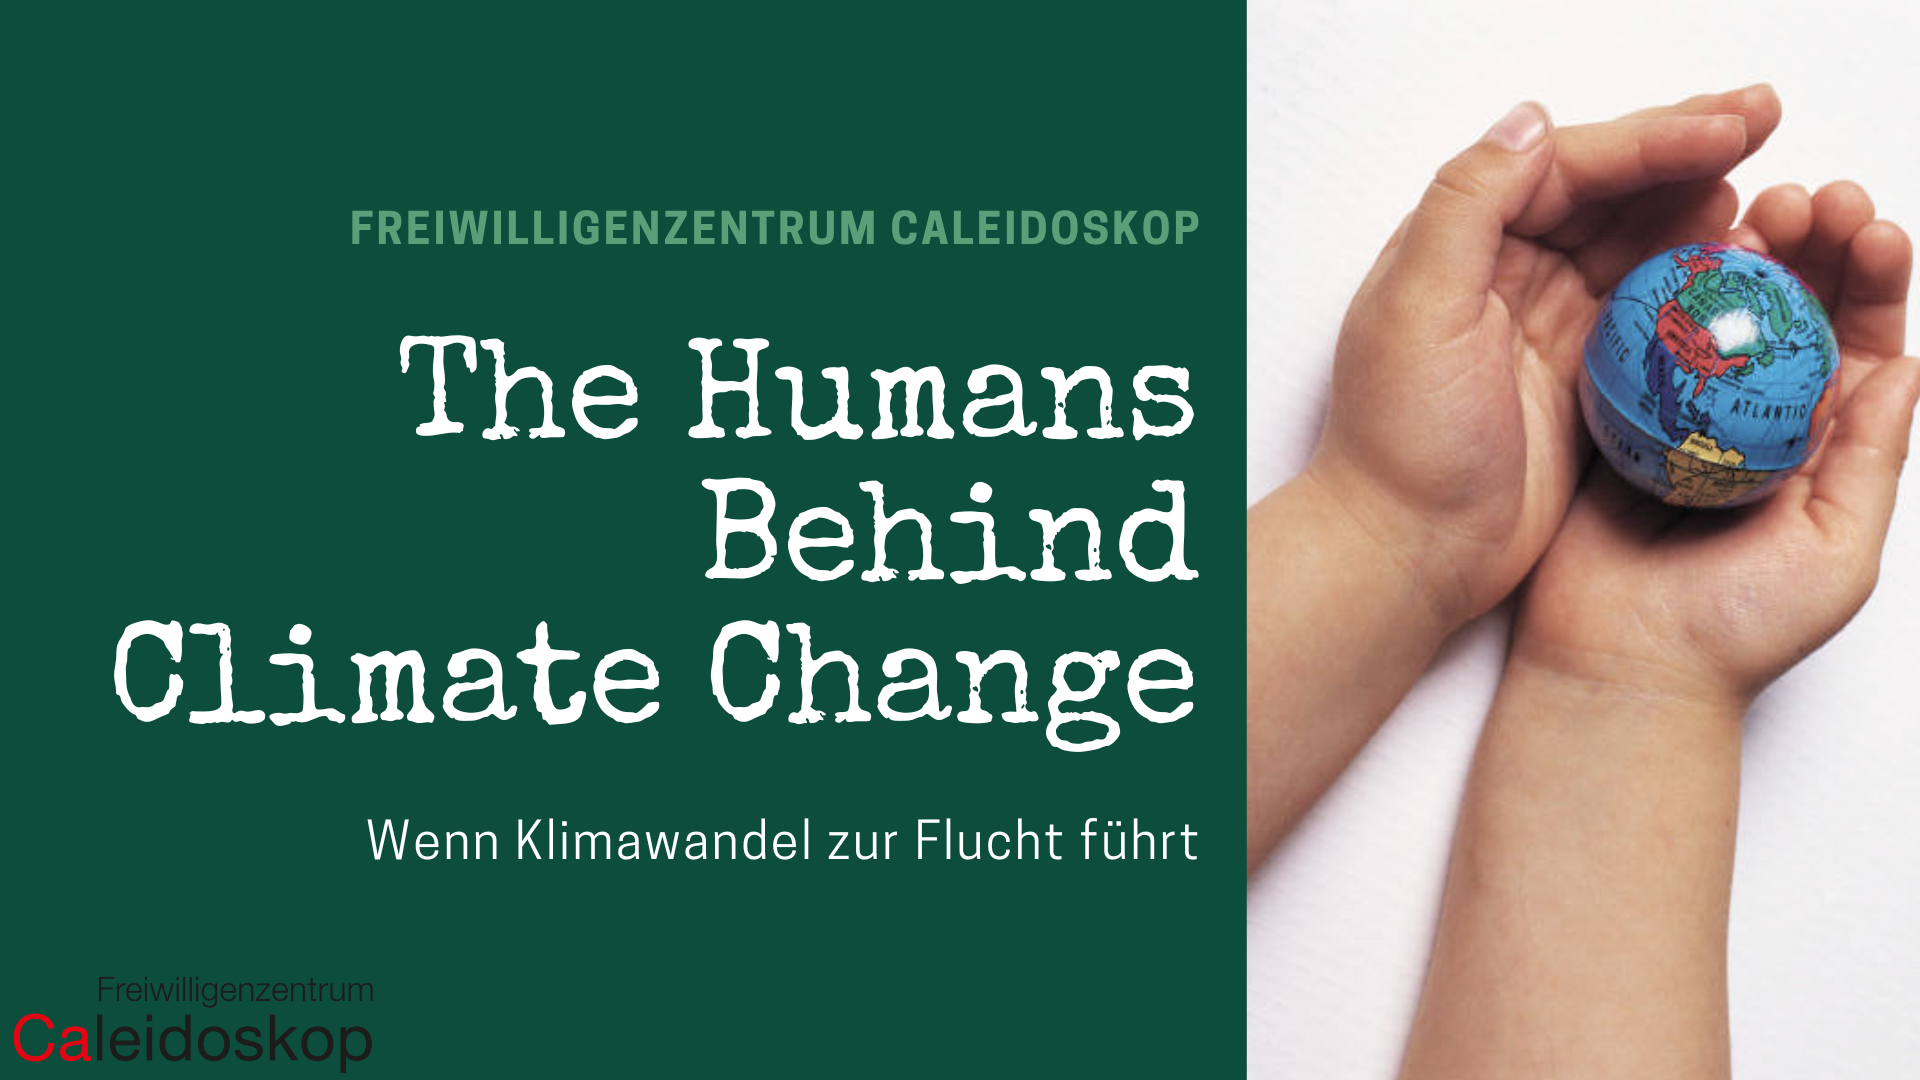 "The humans behind climate change: Wenn Klimawandel zur Flucht führt"